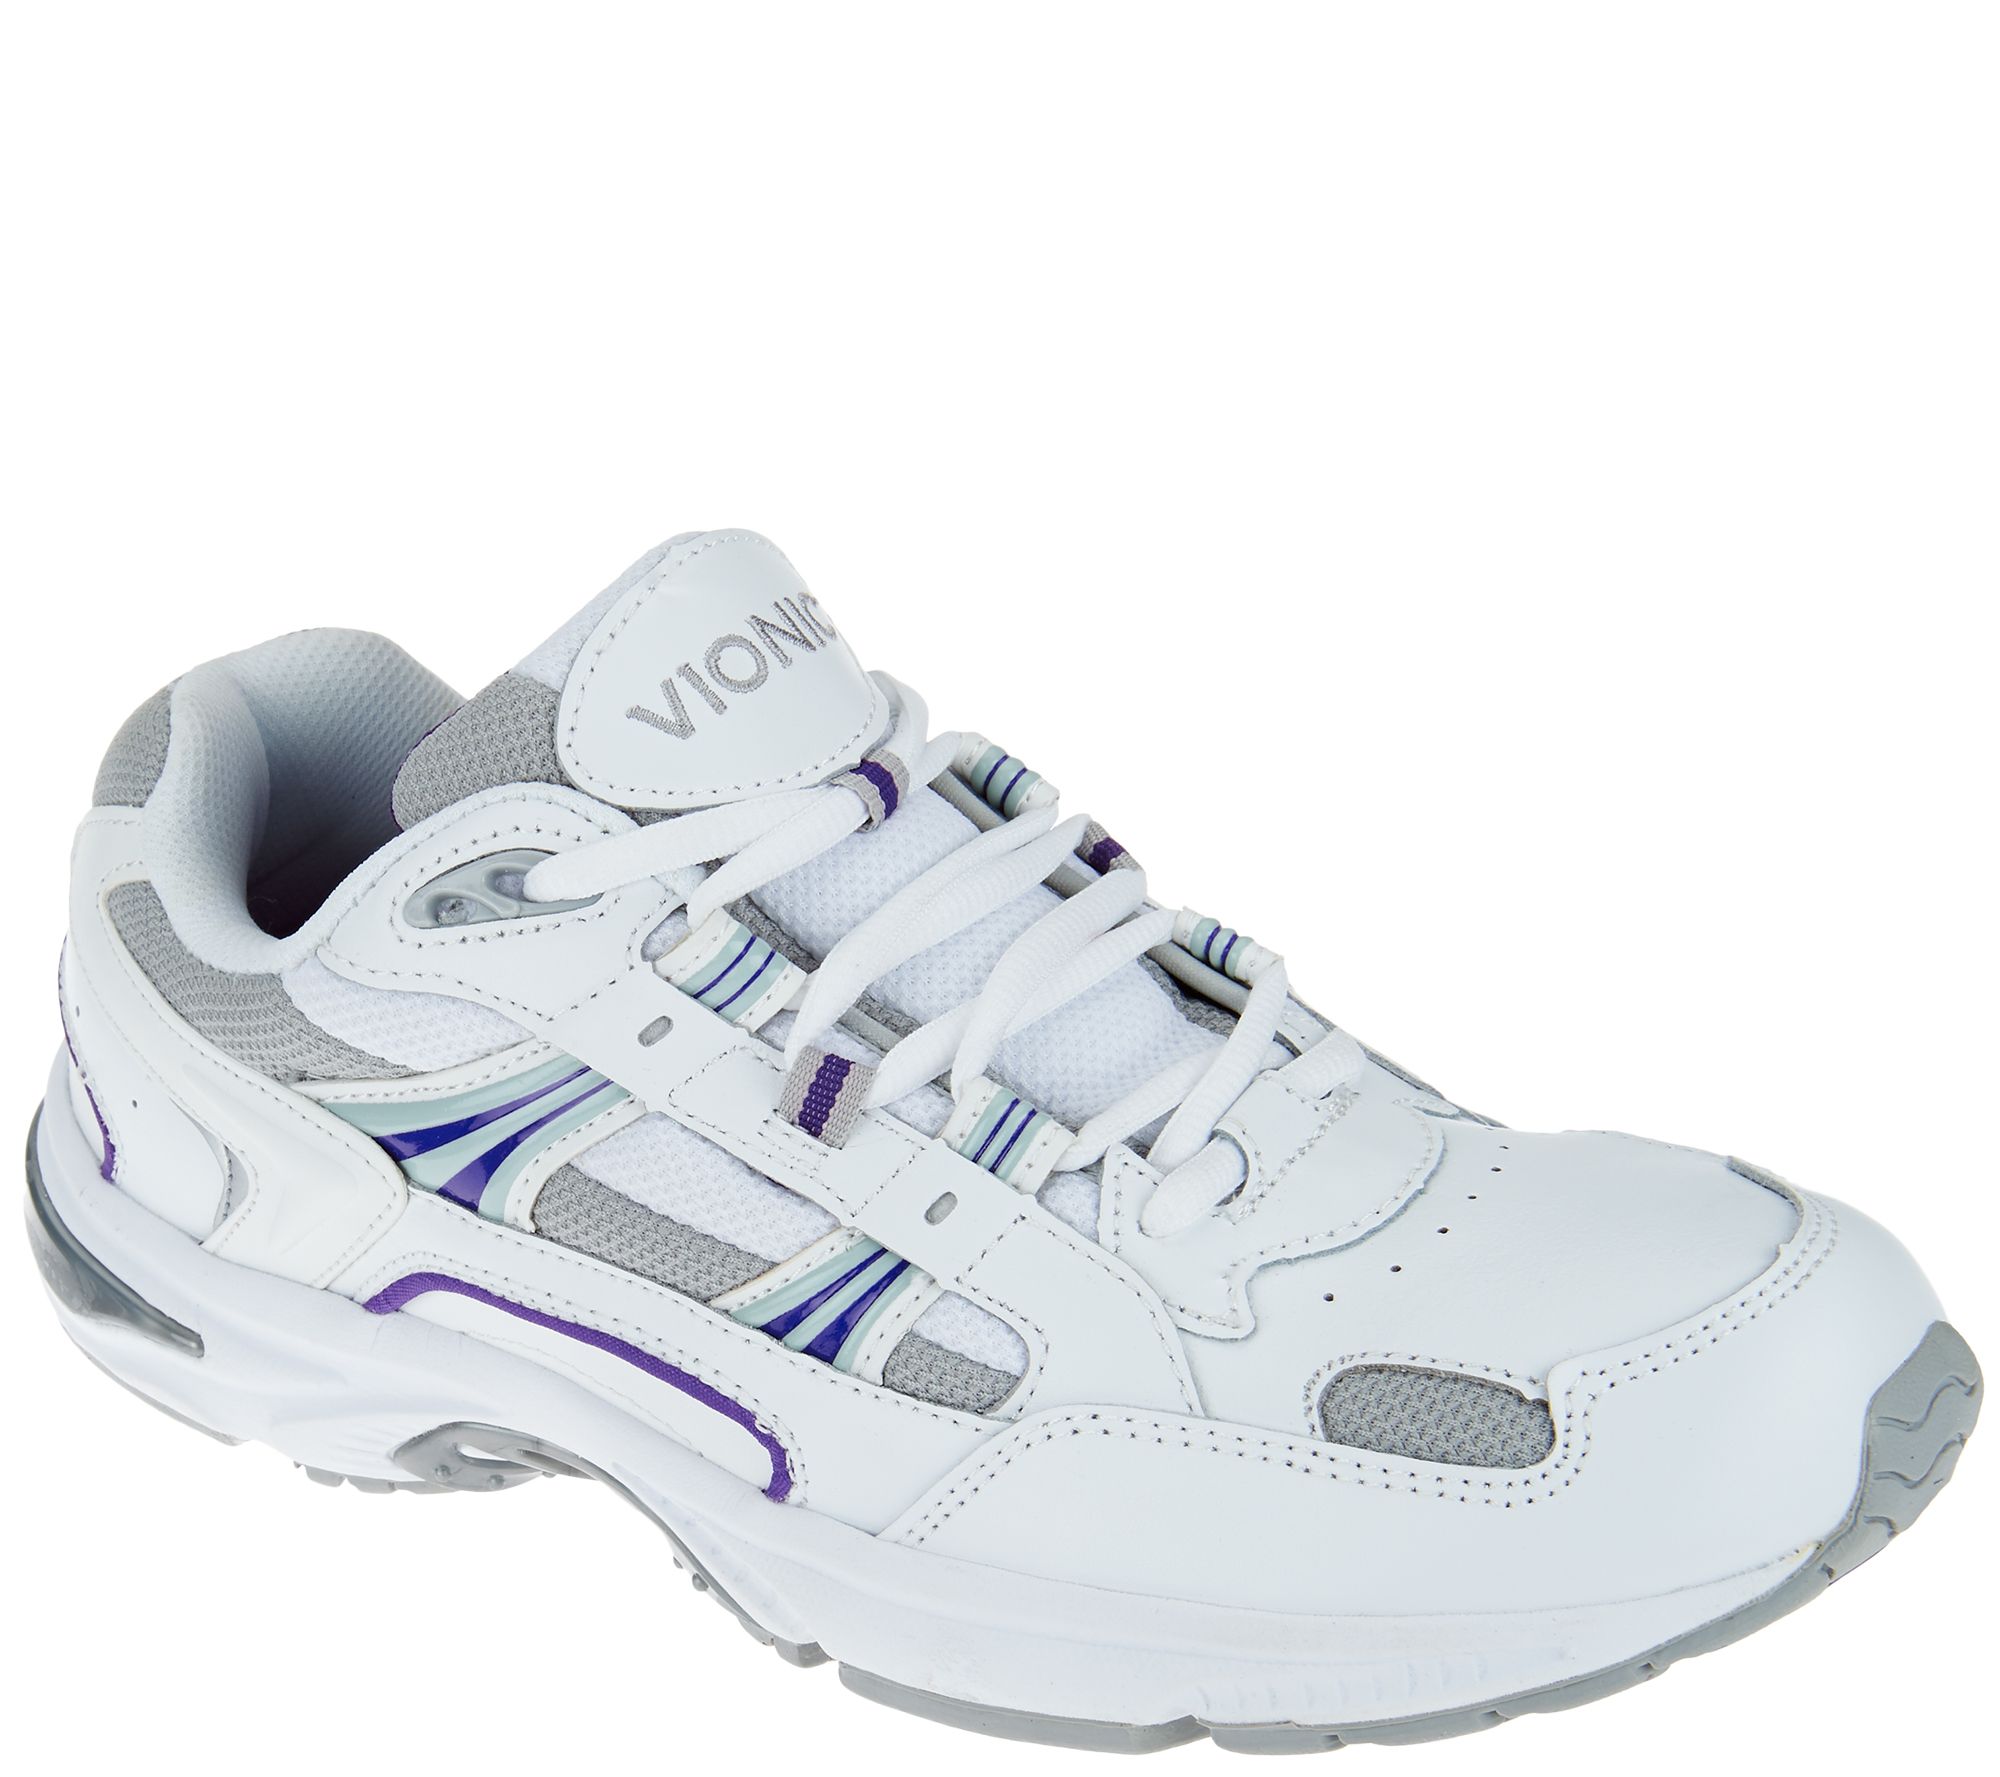 vionic tennis shoes qvc